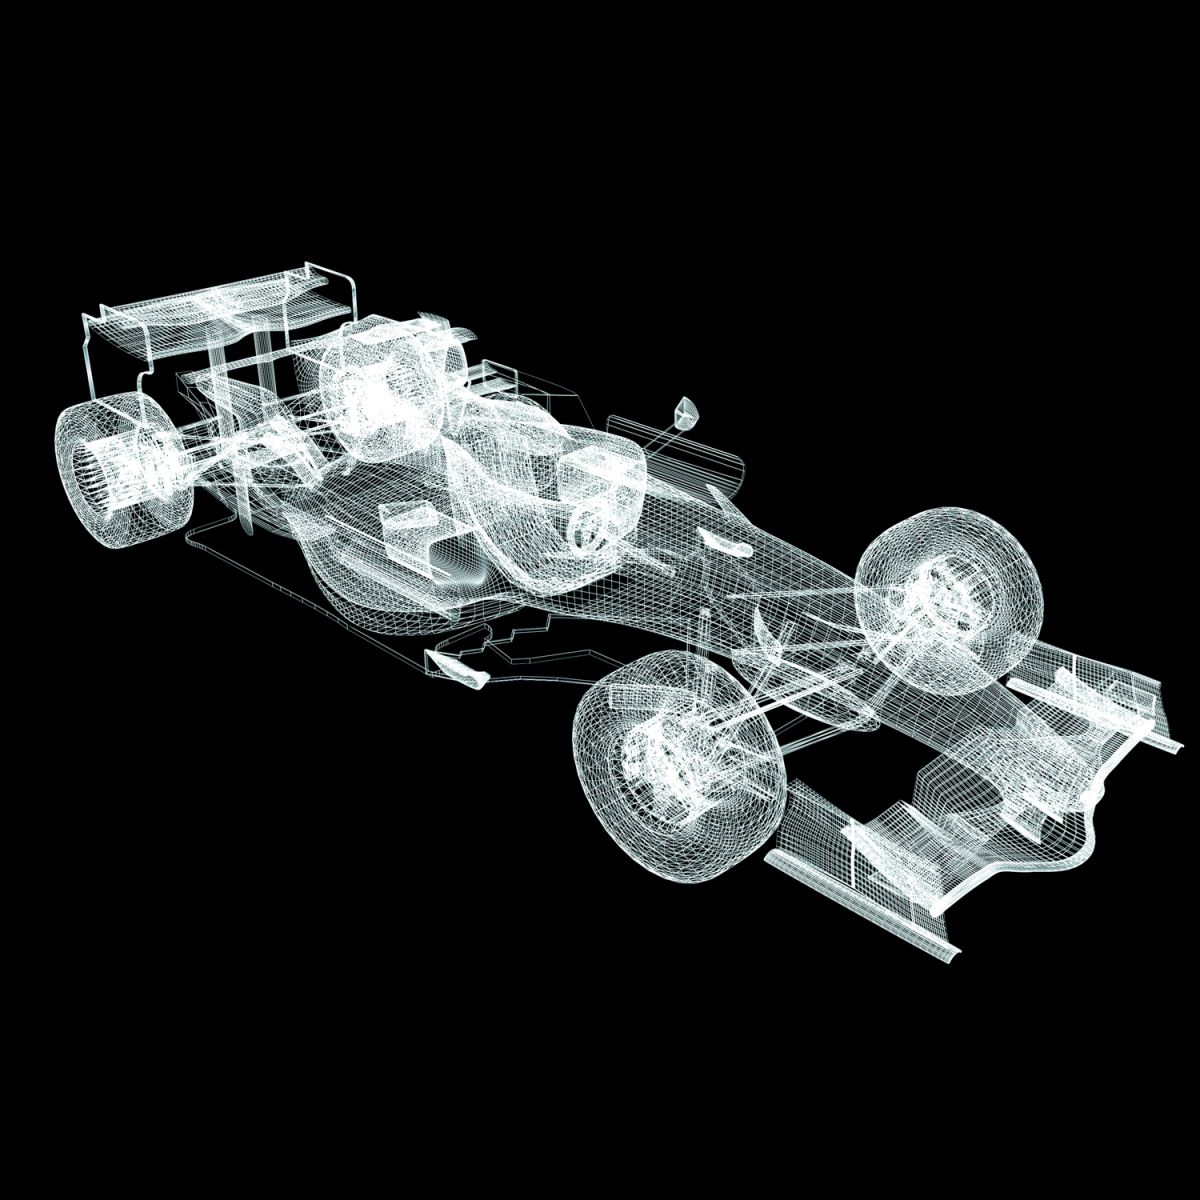 A blueprint of a Formula 1 car